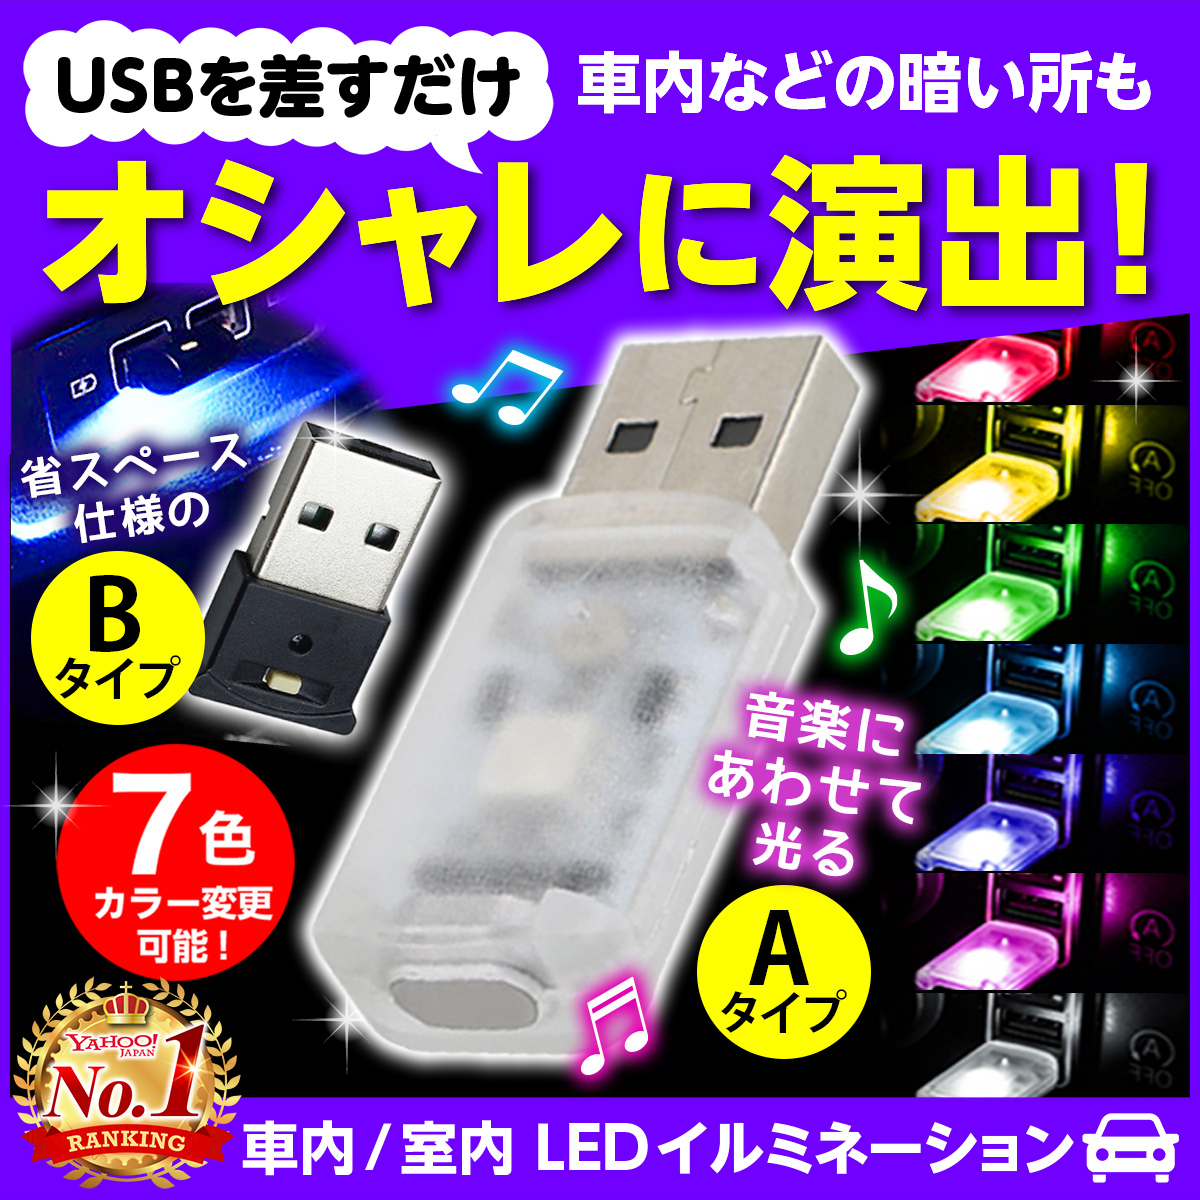 新着商品 USB イルミネーション ライト 8色 車内 照明 カー用品